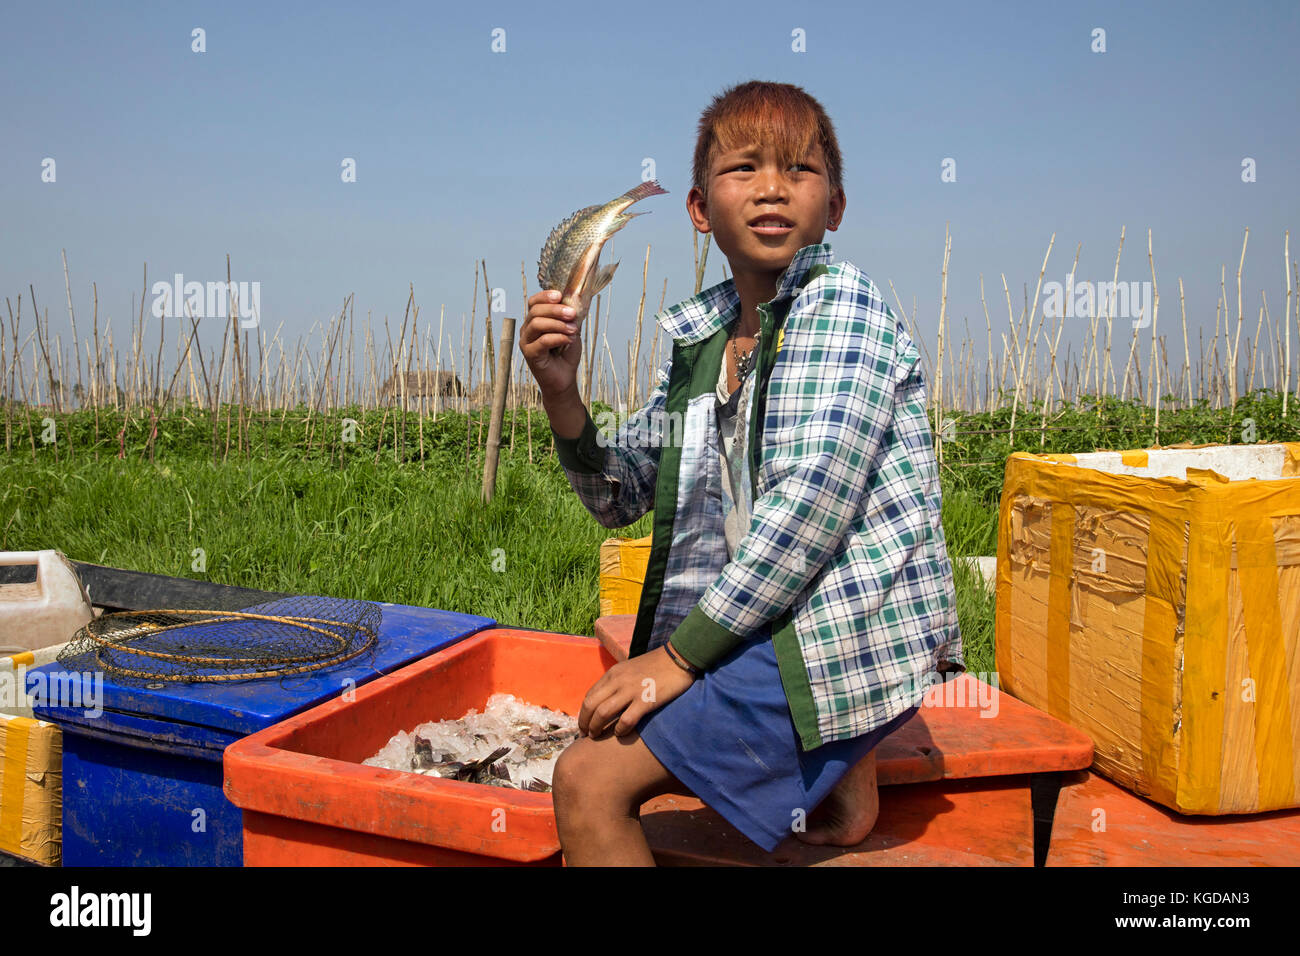 Jeune garçon birman montrant des captures dans un petit bateau sur le lac Inle, nyaungshwe, shan state, myanmar / Birmanie Banque D'Images